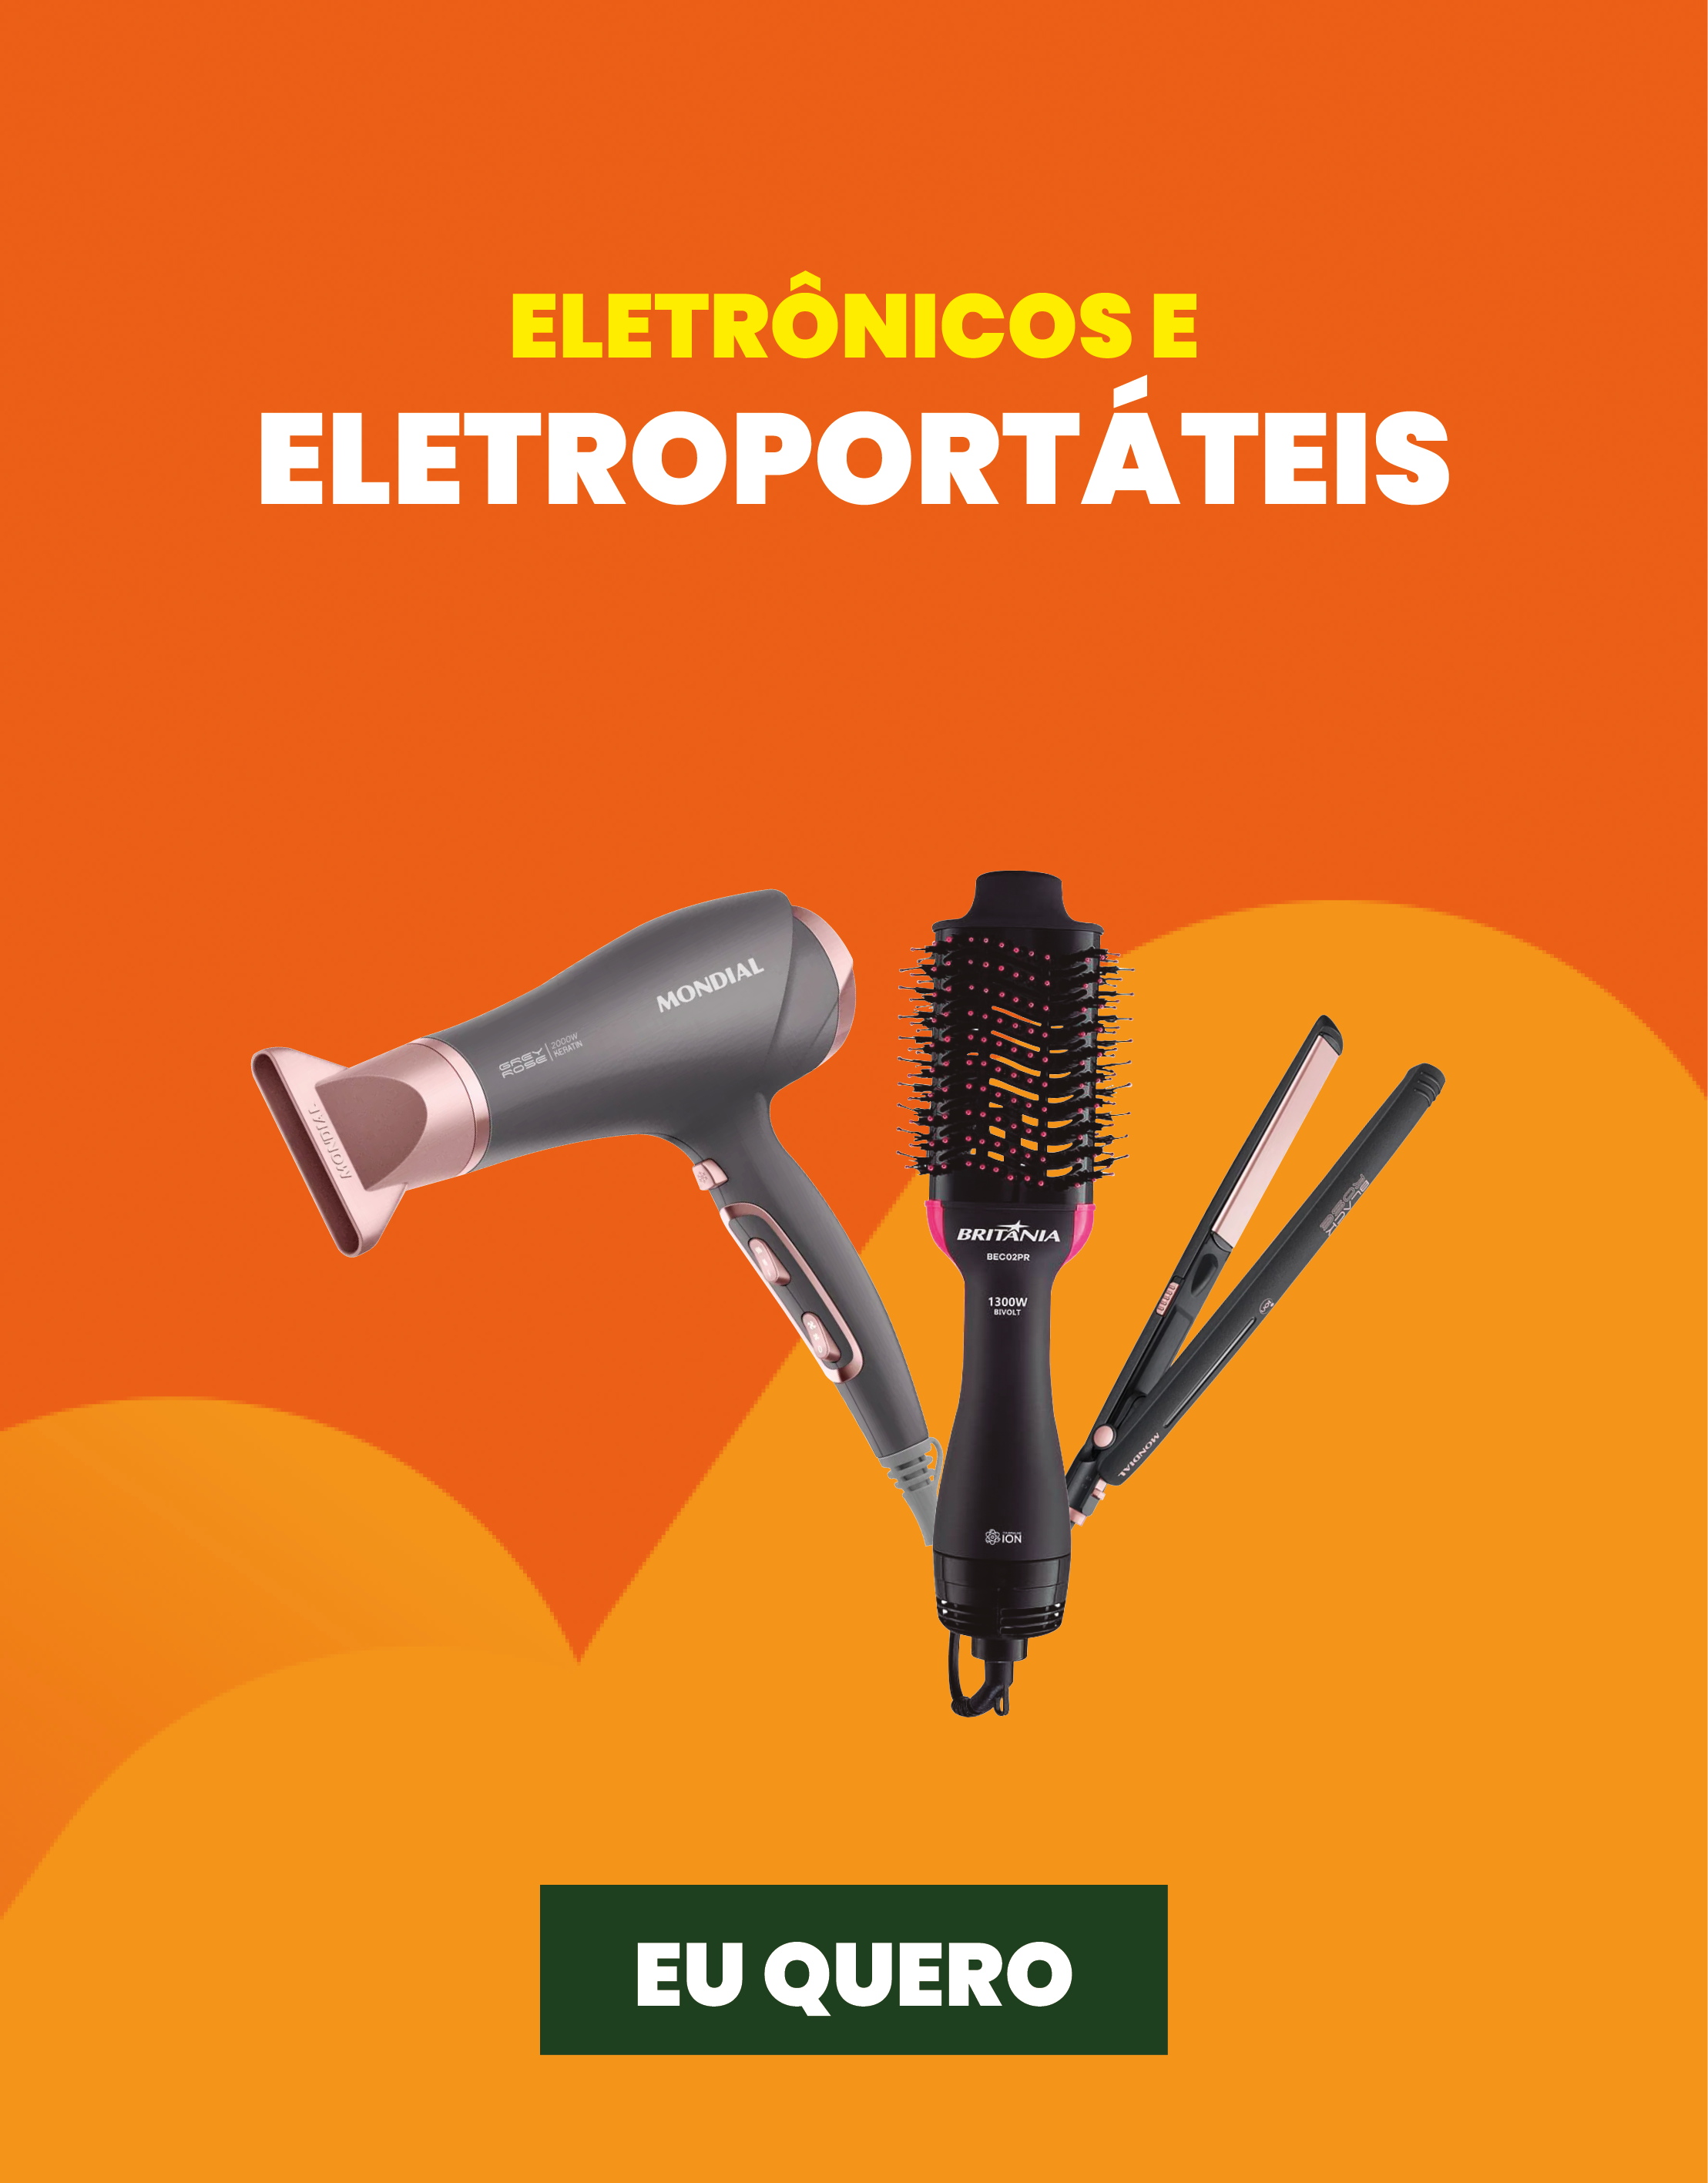  eletronicos-e-eletroportateis